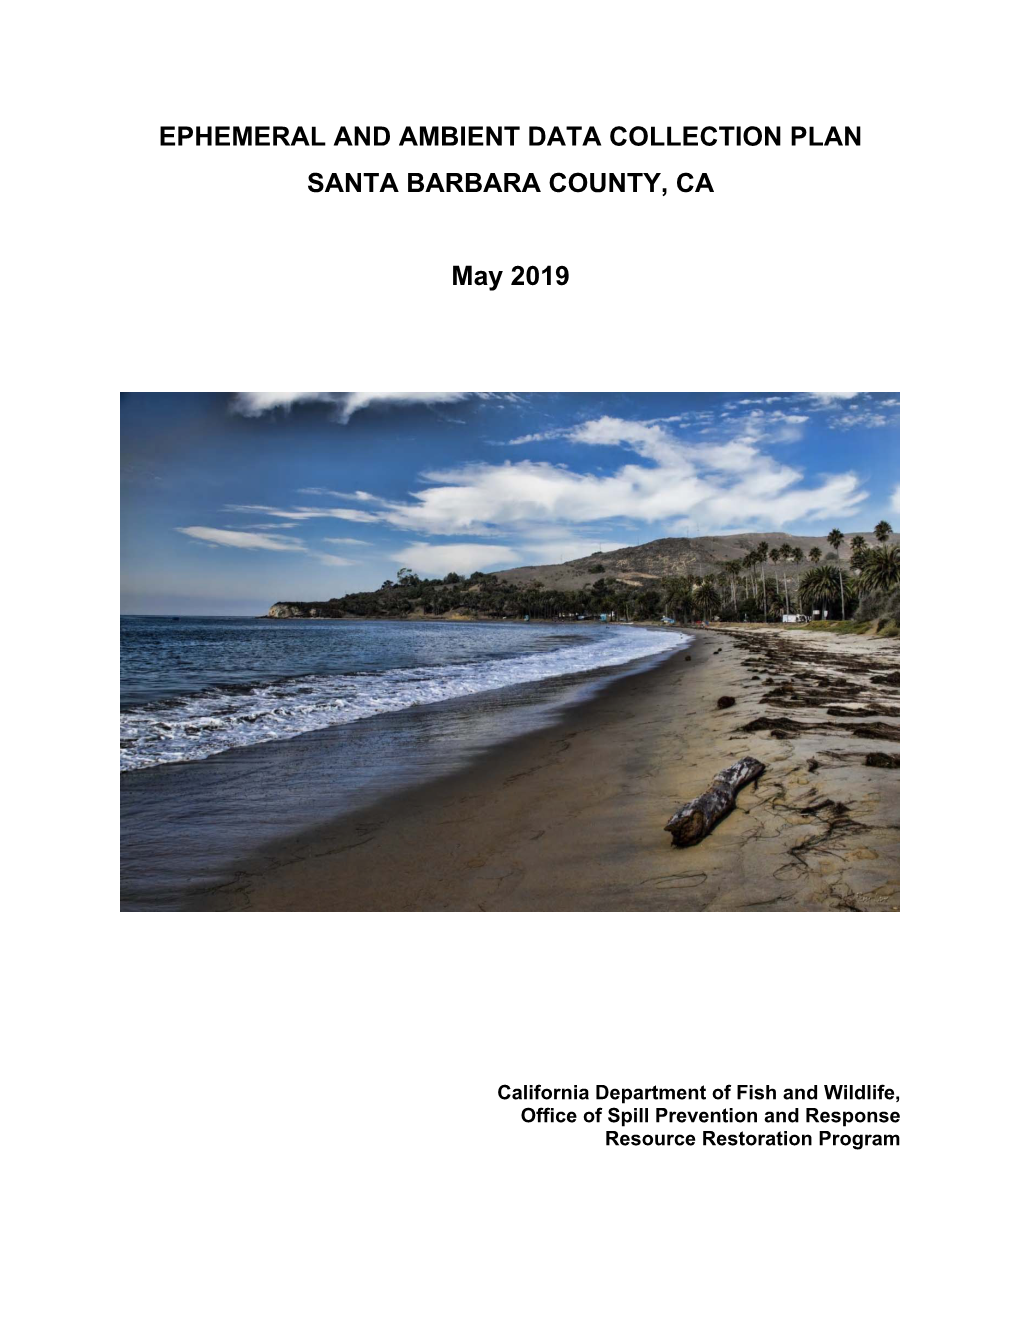 Ephemeral and Ambient Data Collection Plan Santa Barbara County, Ca